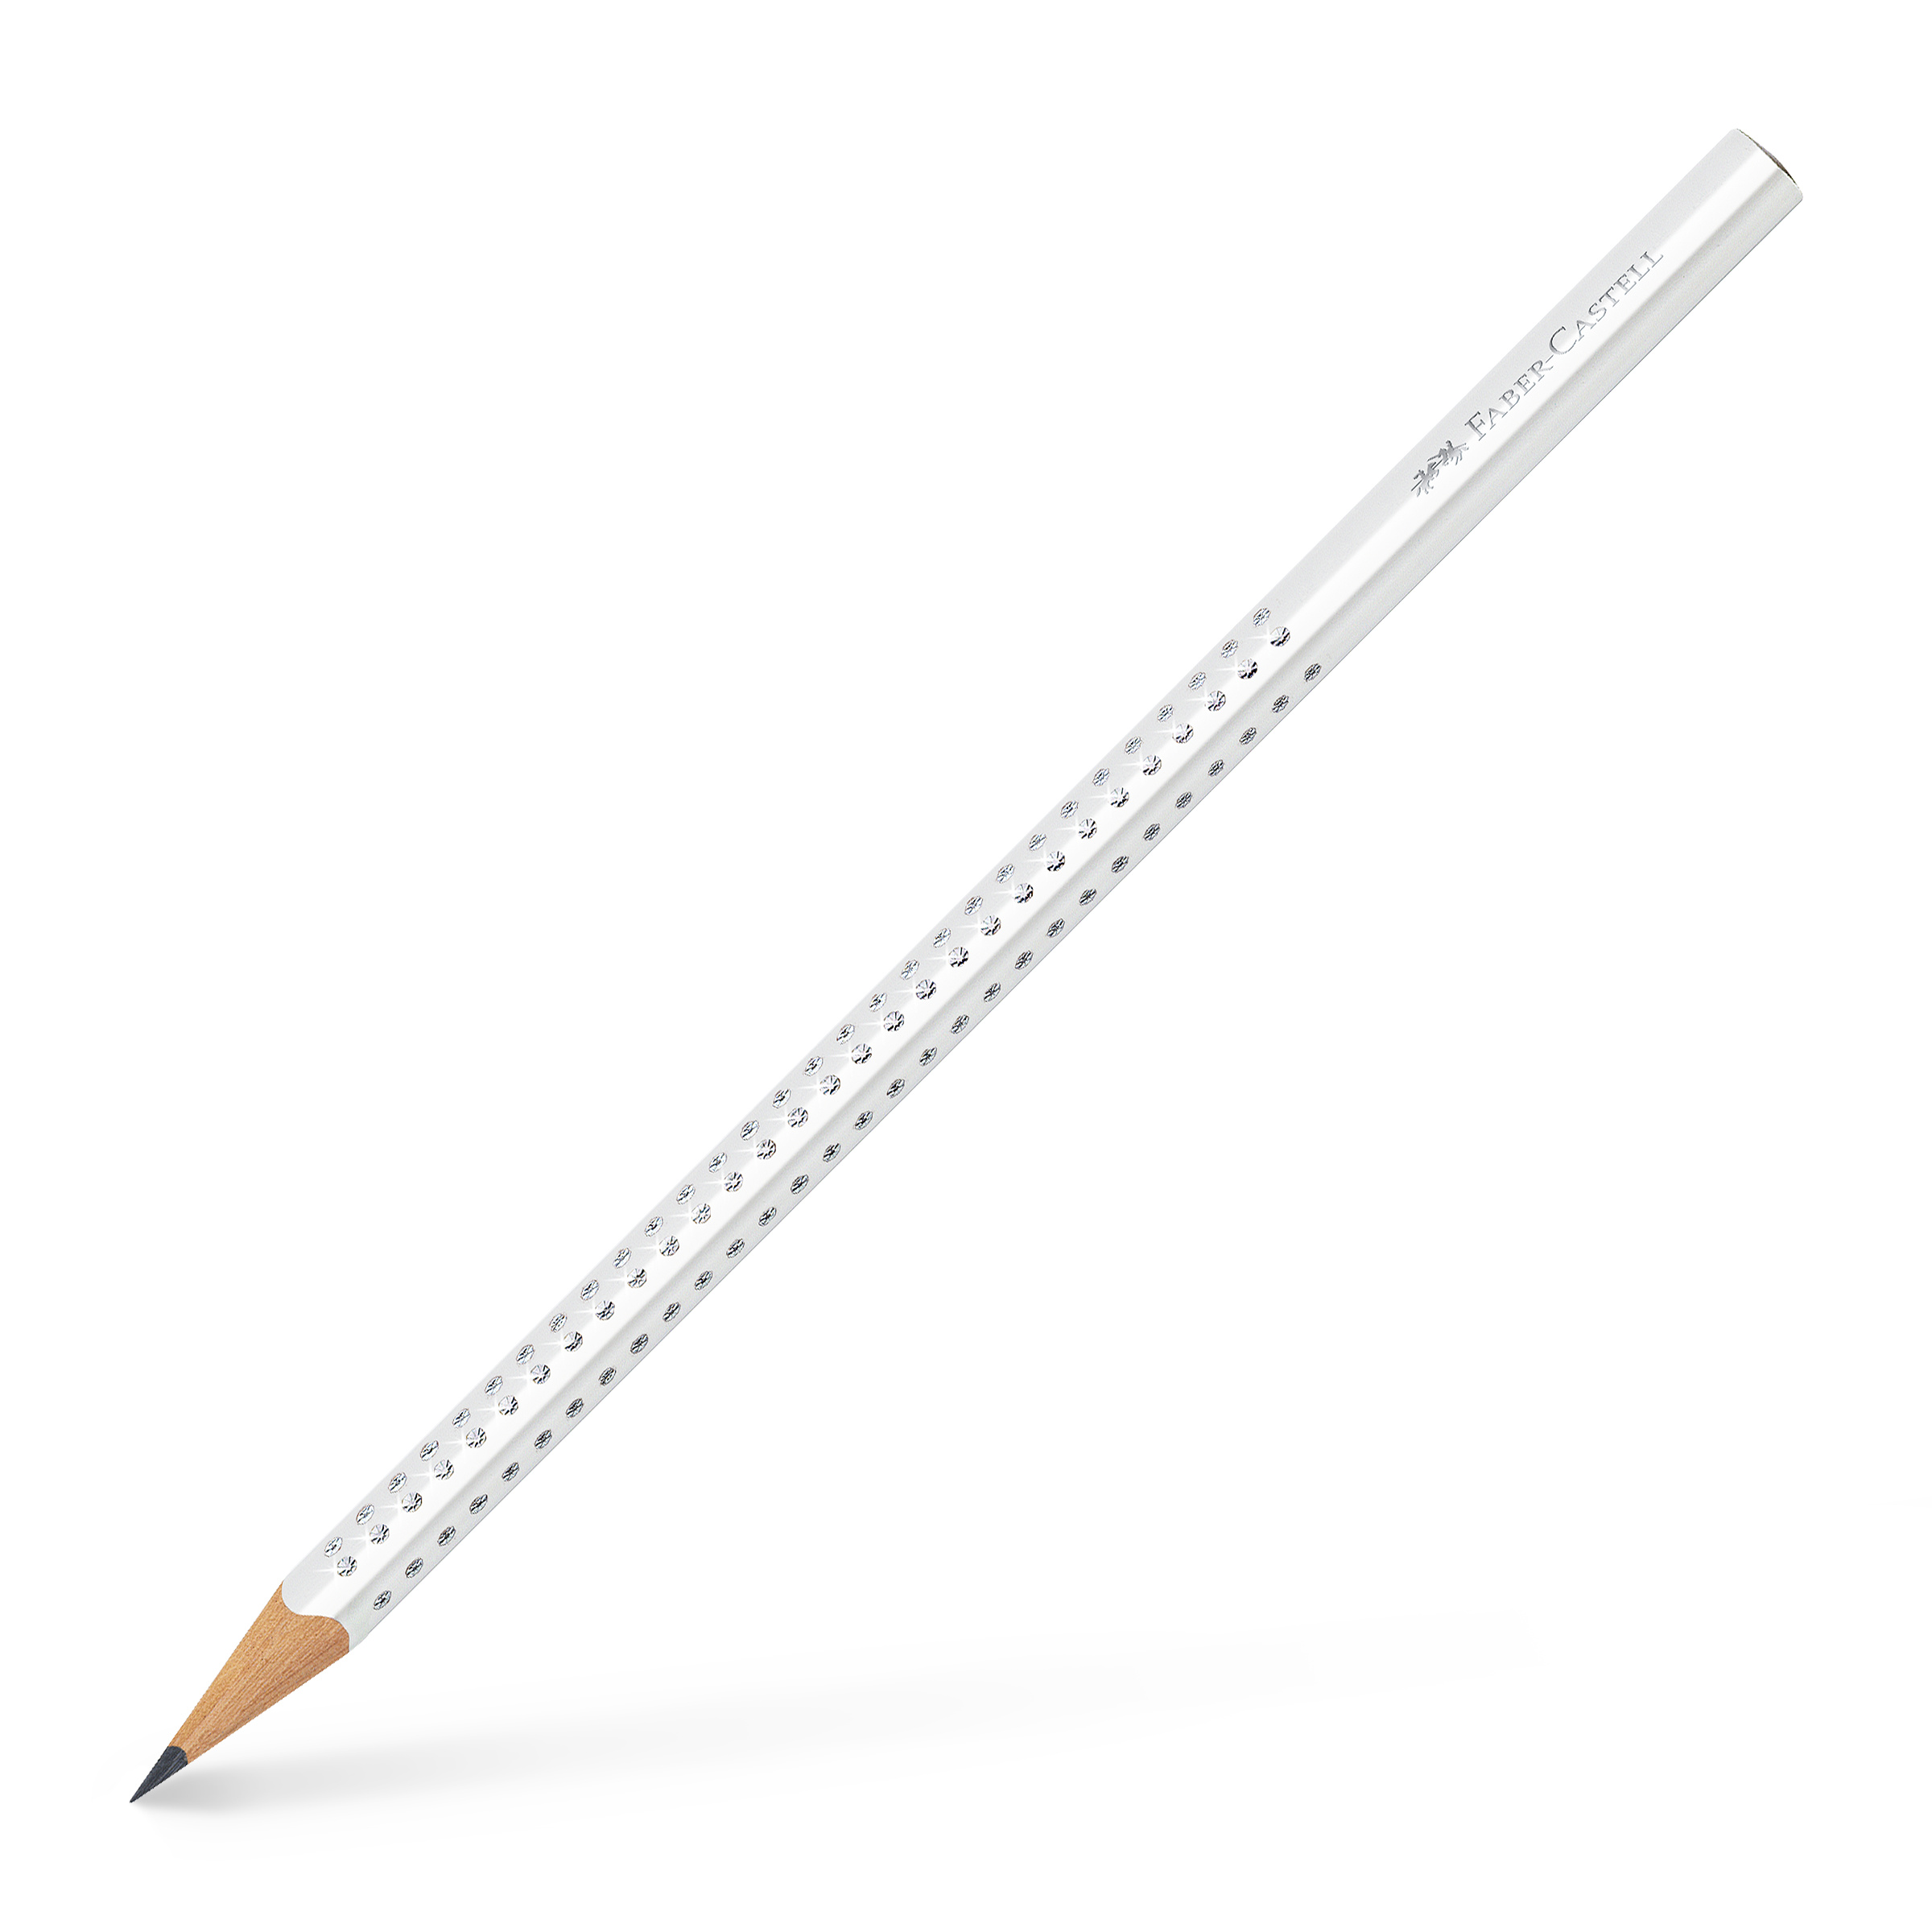 GRIP SPARKLE White Graphite pencil